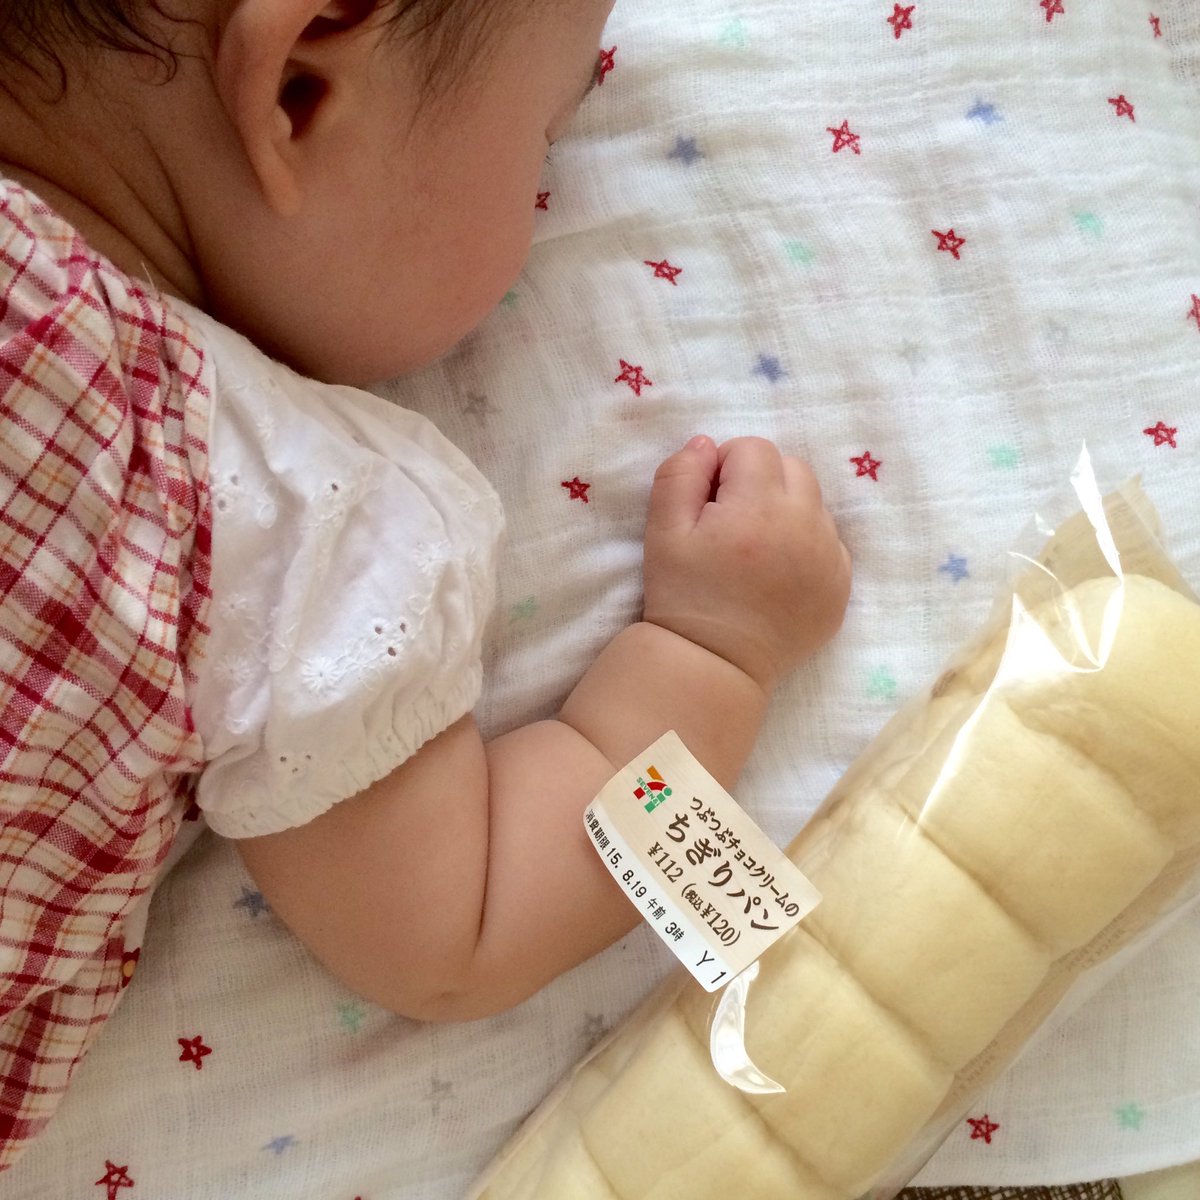 赤ちゃんの腕 我が子の最強ちぎりパン画像 このタグの癒され具合すごい 食べちゃいたいとはこのことか Togetter